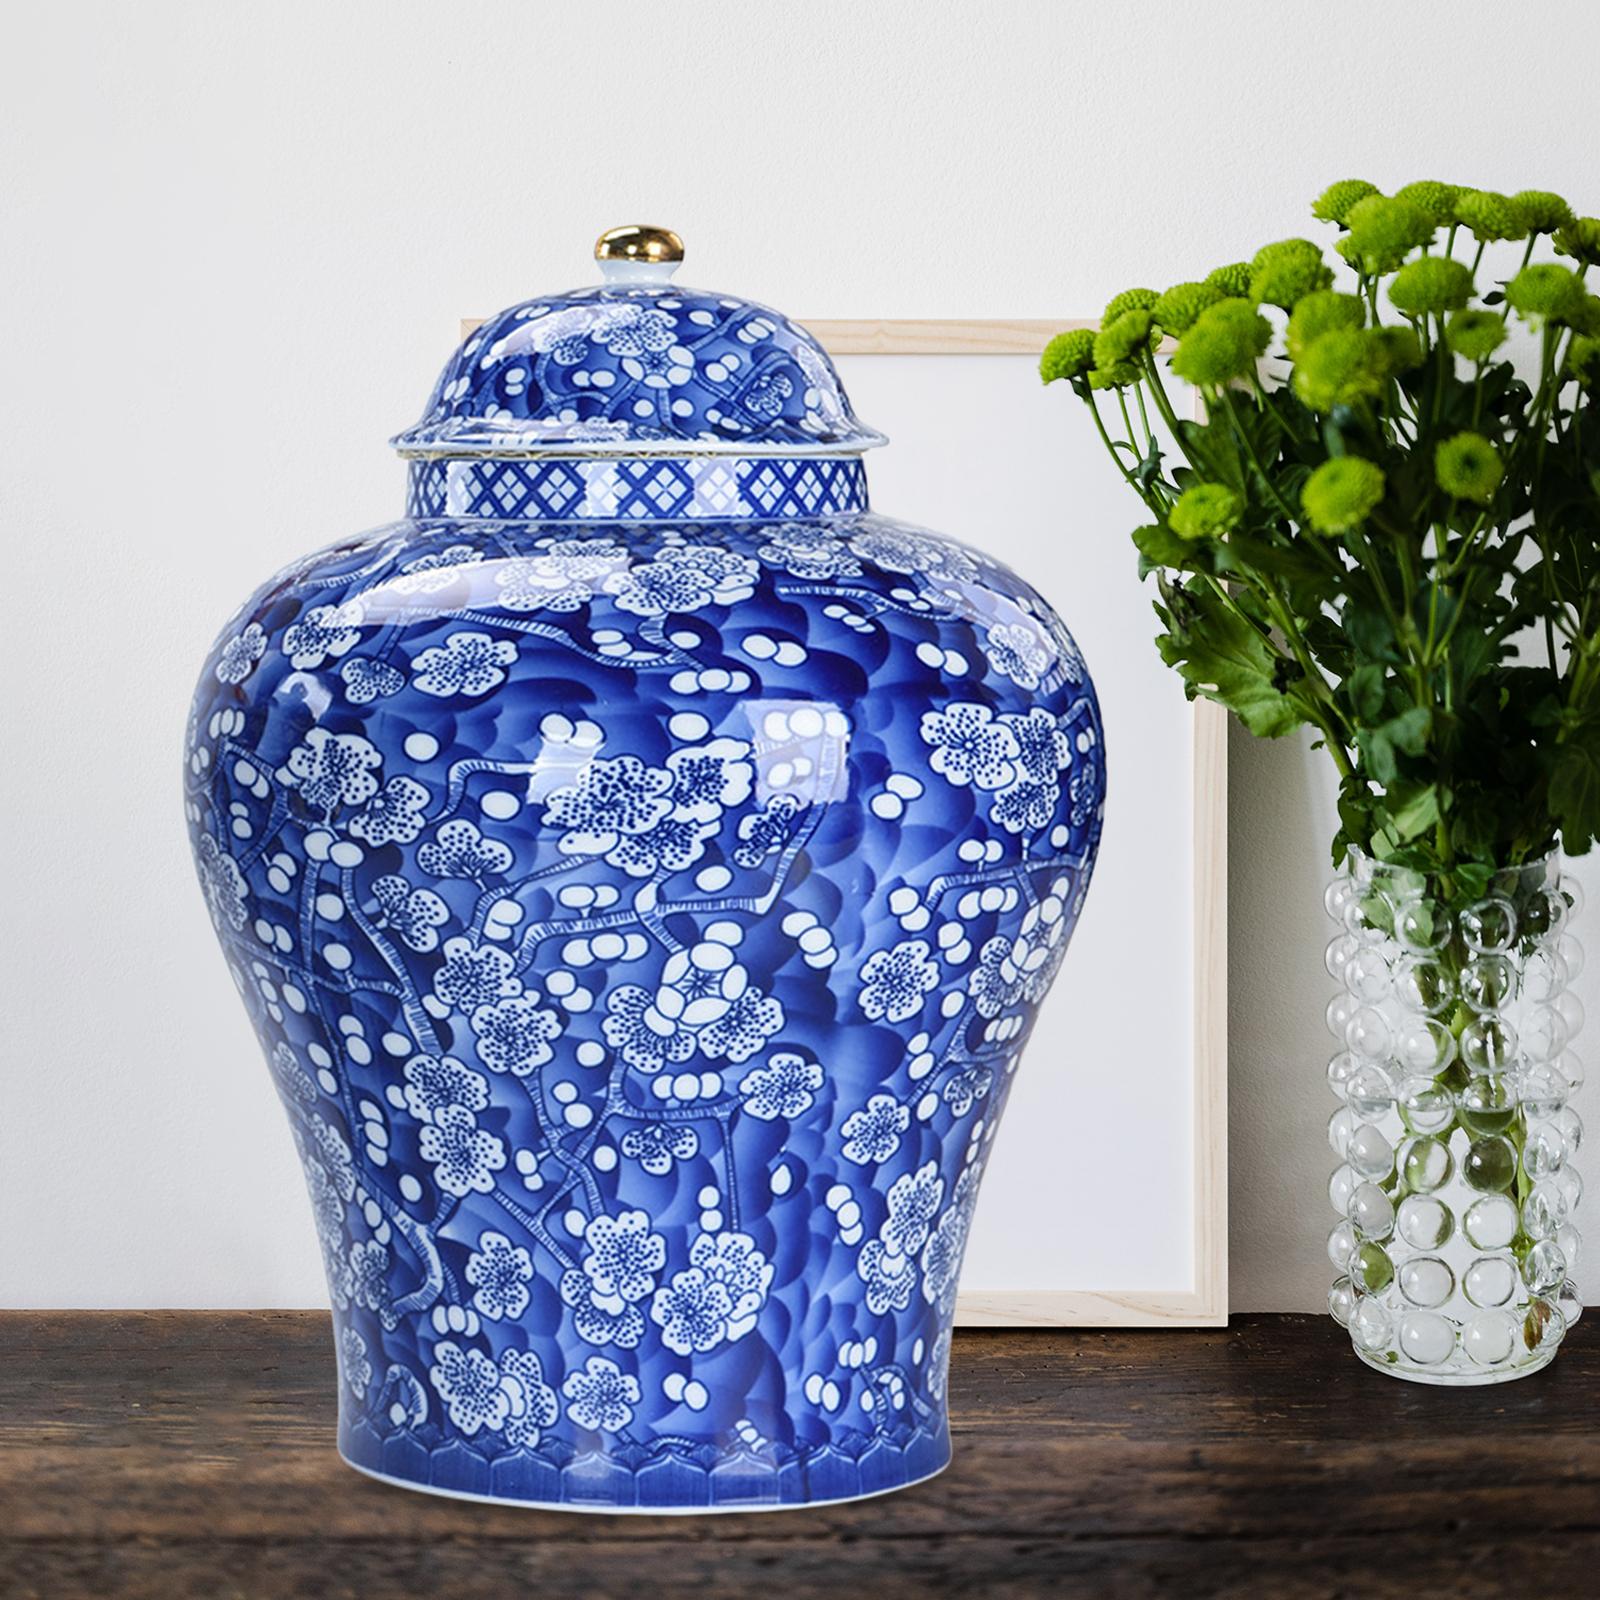 Chinese Style Plum Ceramic Bud Vase Ginger Jar with Lid Glazed Asian Decor